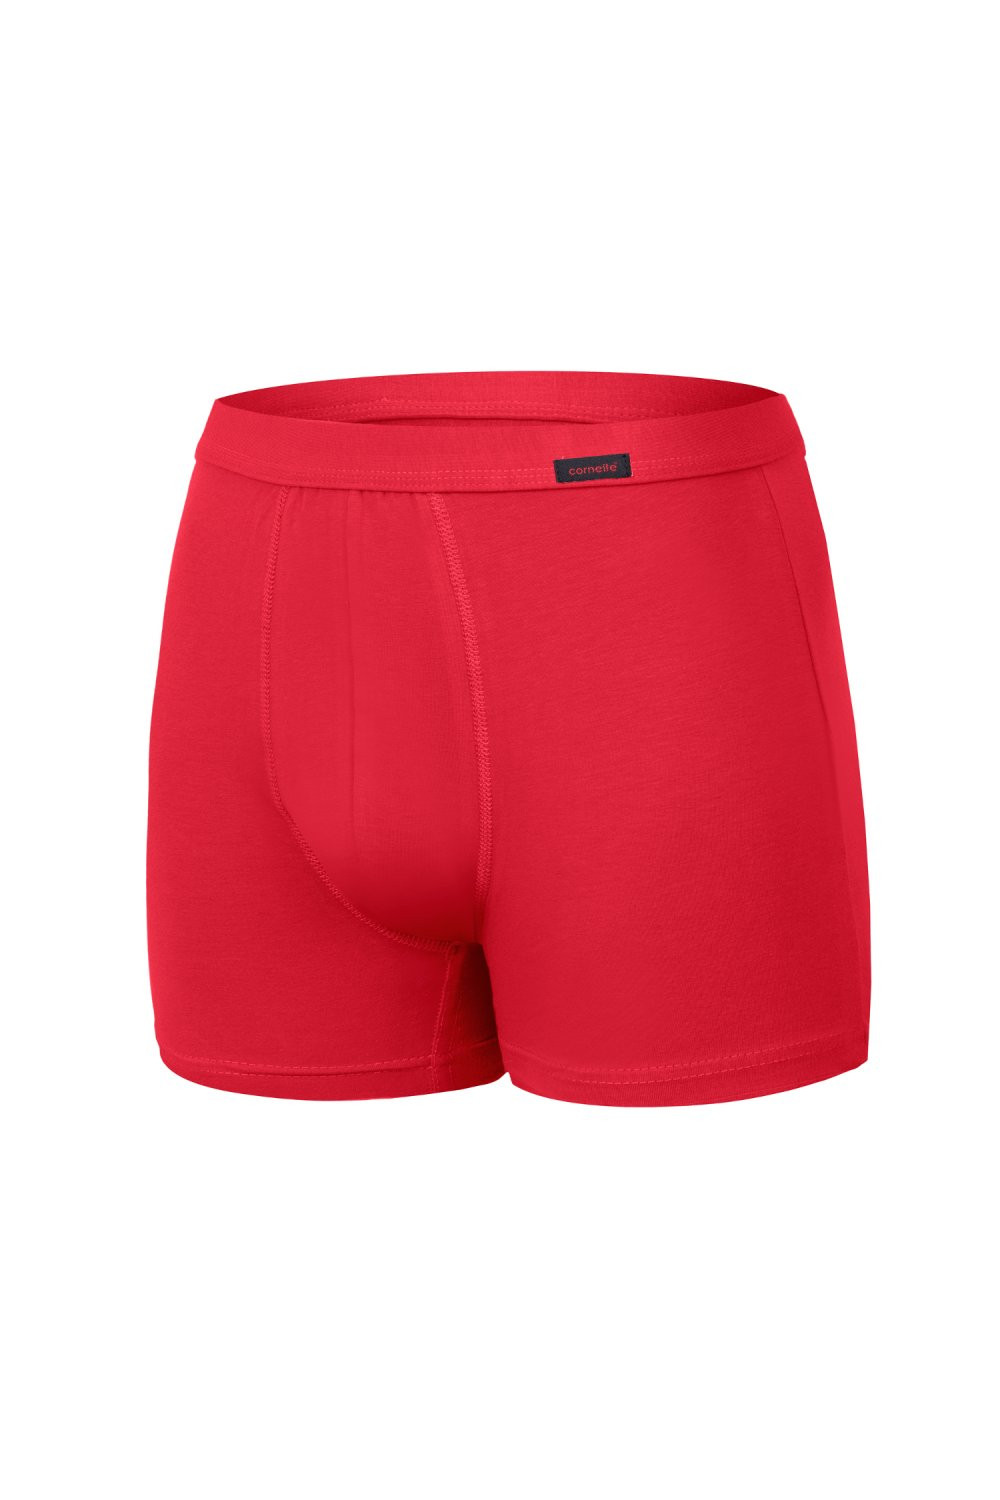 Pánské boxerky 220 red - CORNETTE Červená XL